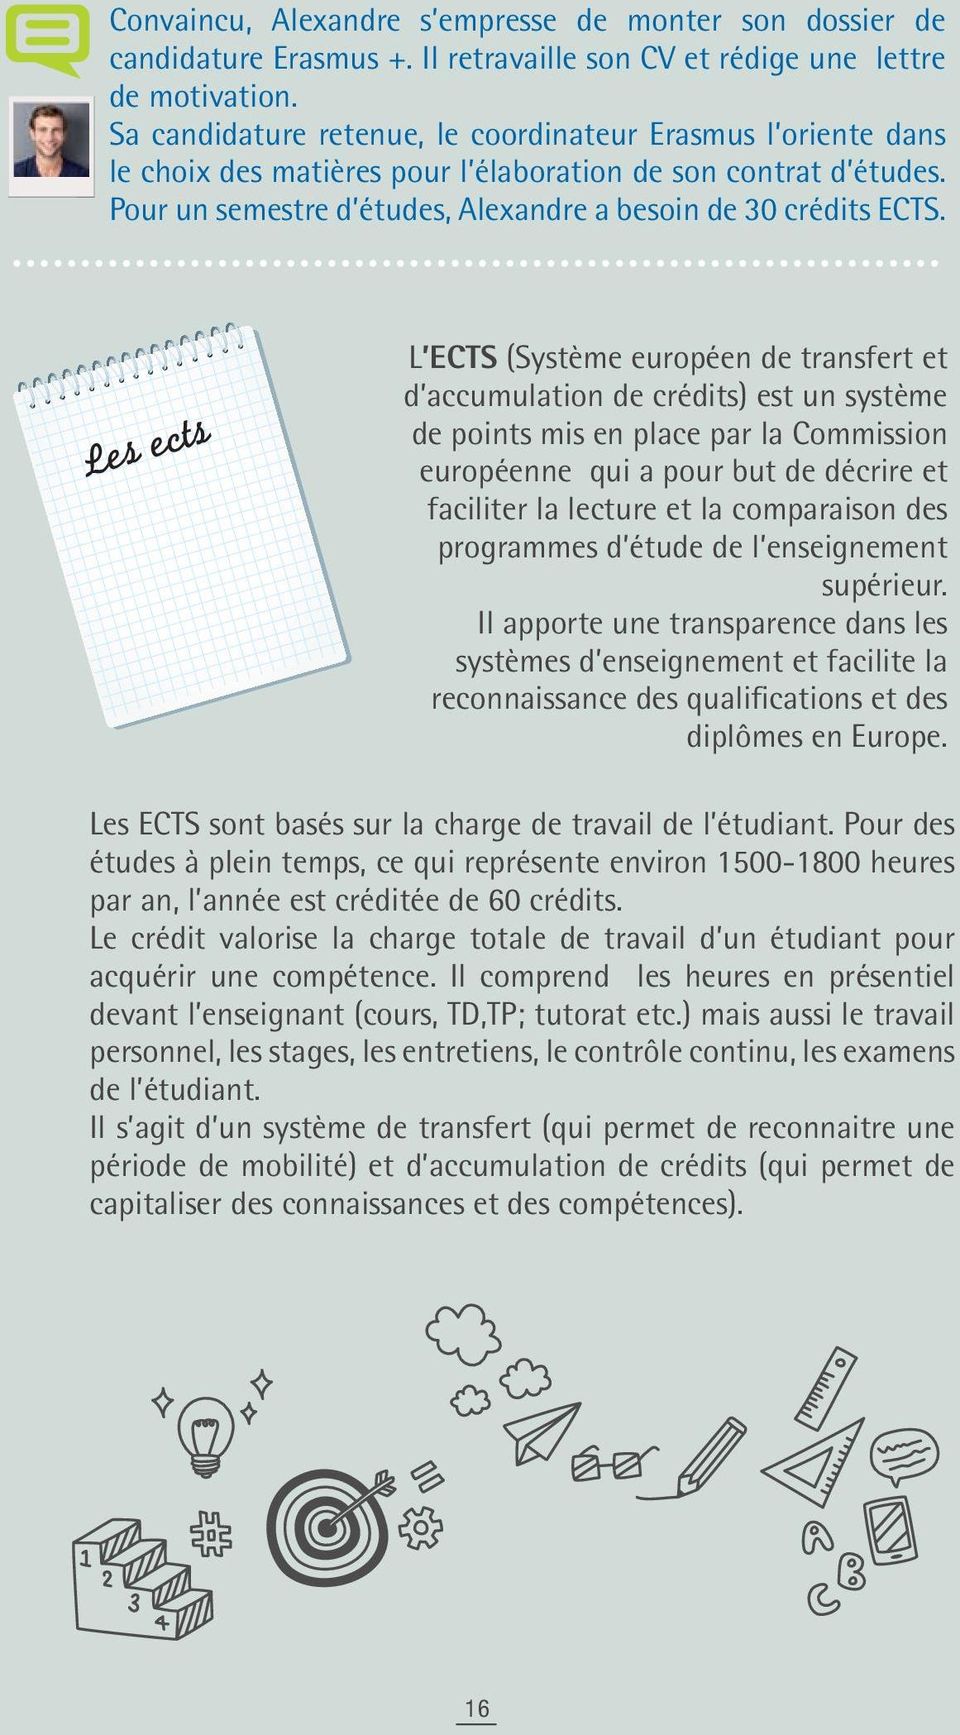 Les ects L ECTS (Système européen de transfert et d accumulation de crédits) est un système de points mis en place par la Commission européenne qui a pour but de décrire et faciliter la lecture et la